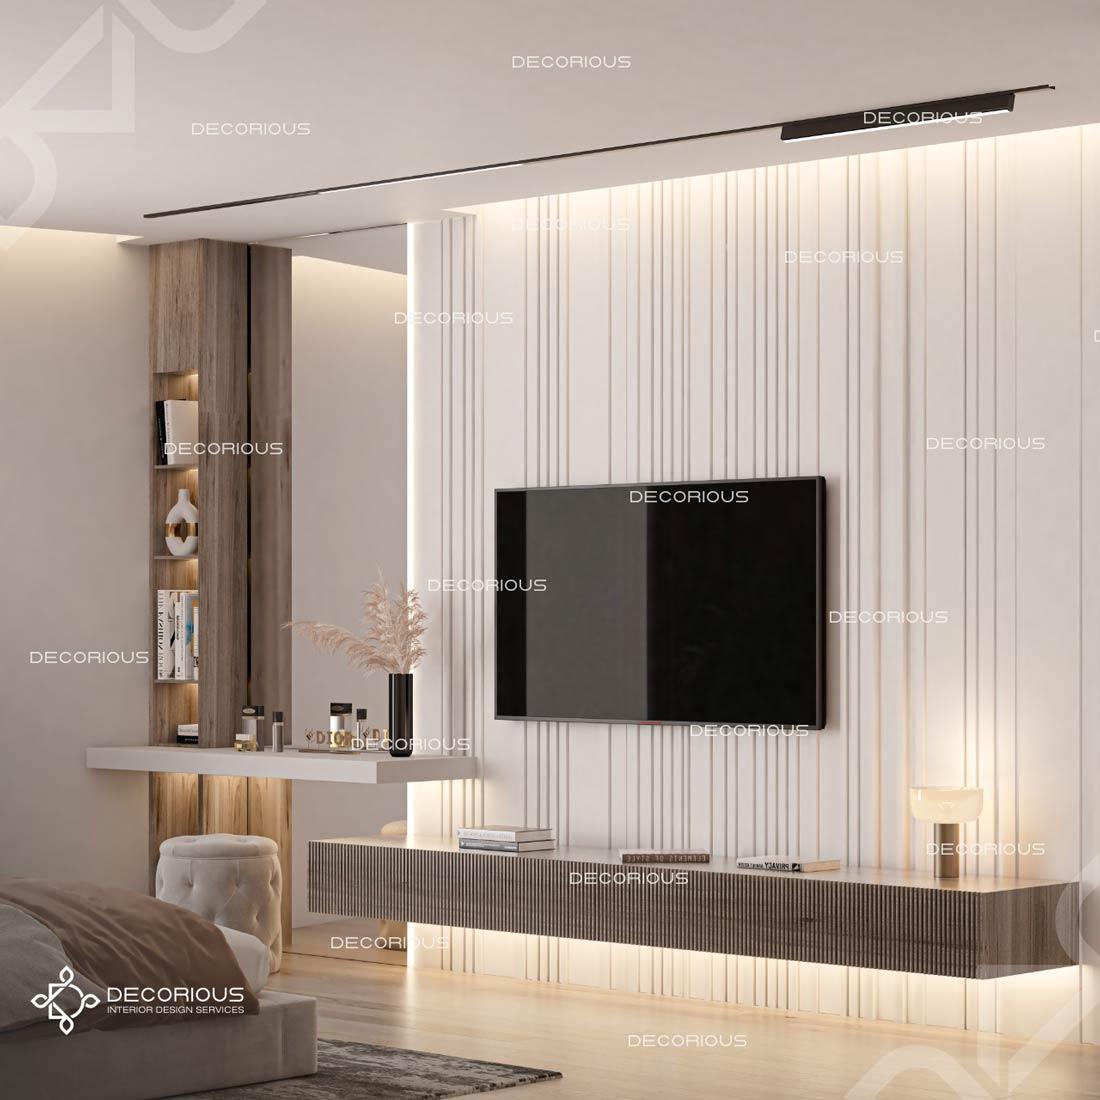 luxury-guest-bedroom-interior-design